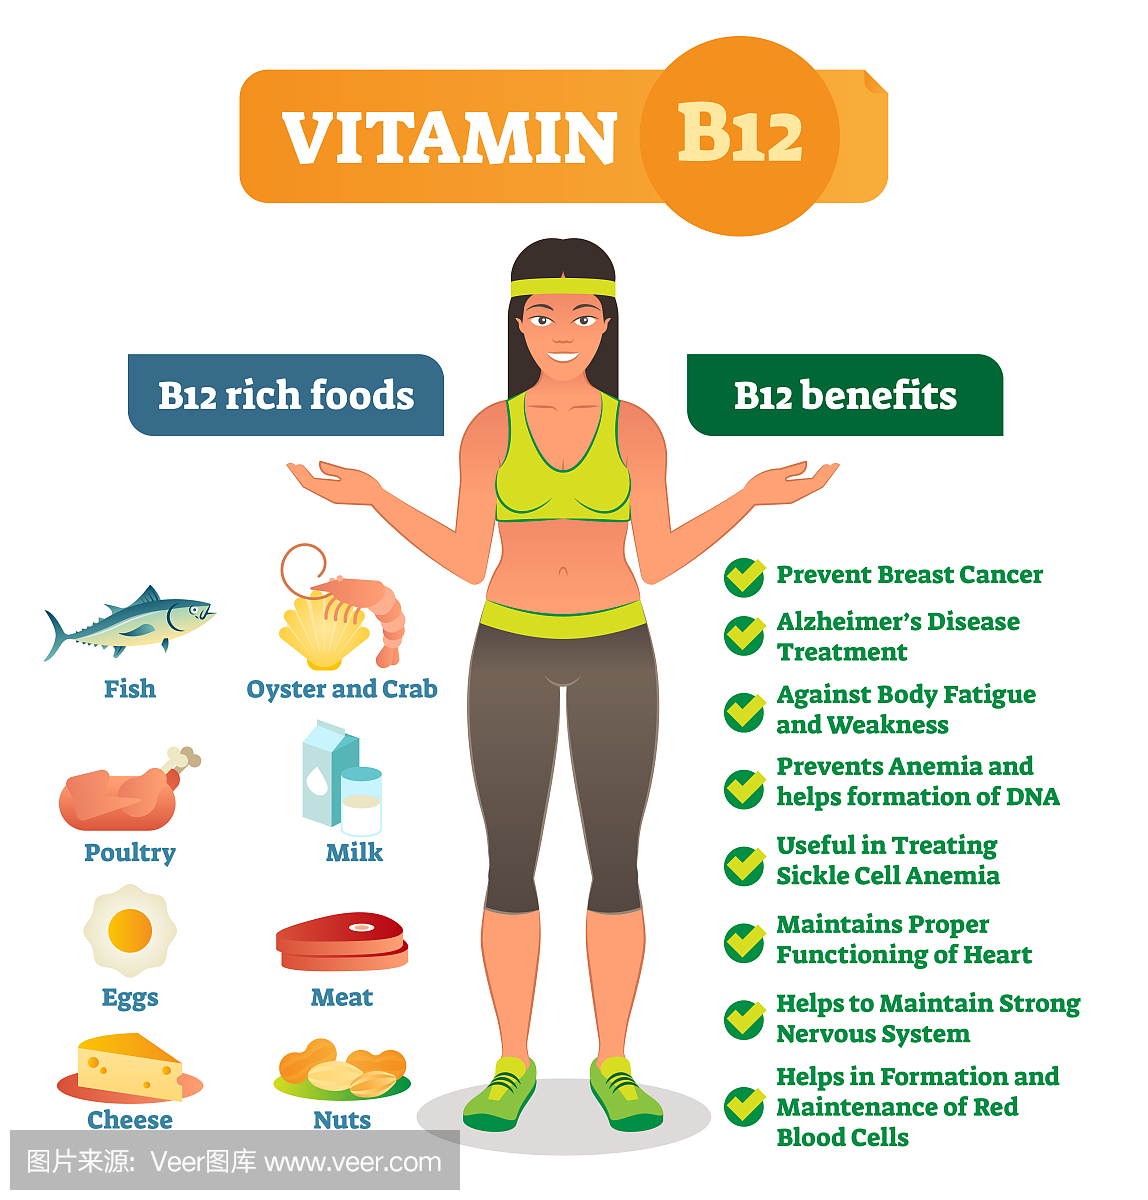 维生素B12丰富的食物图标和健康的好处列表,